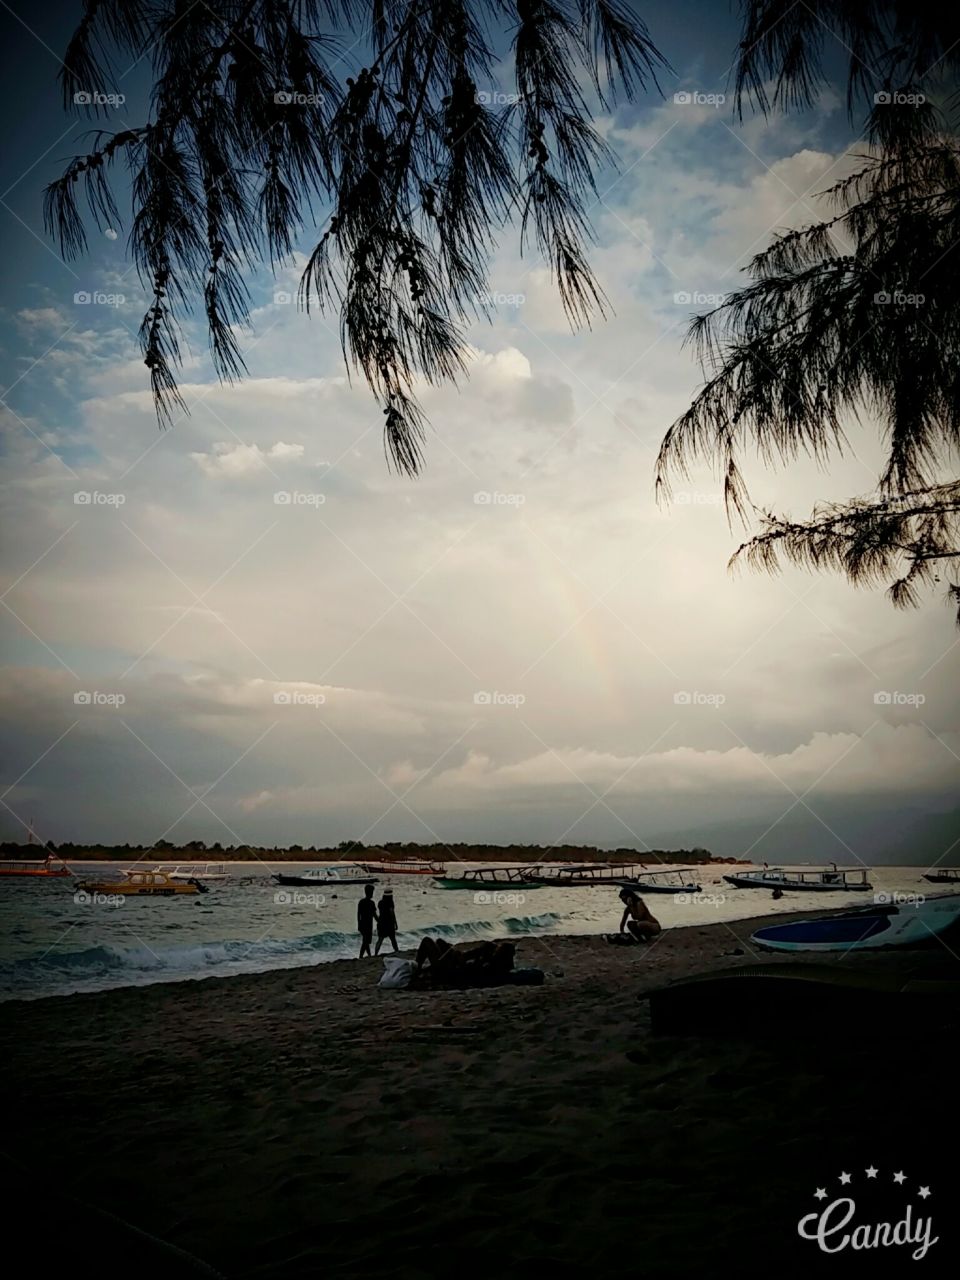 Rainbow 
#gilitrawangan #indonesia #indonesiapicture #sunset #rainbow #travelgram